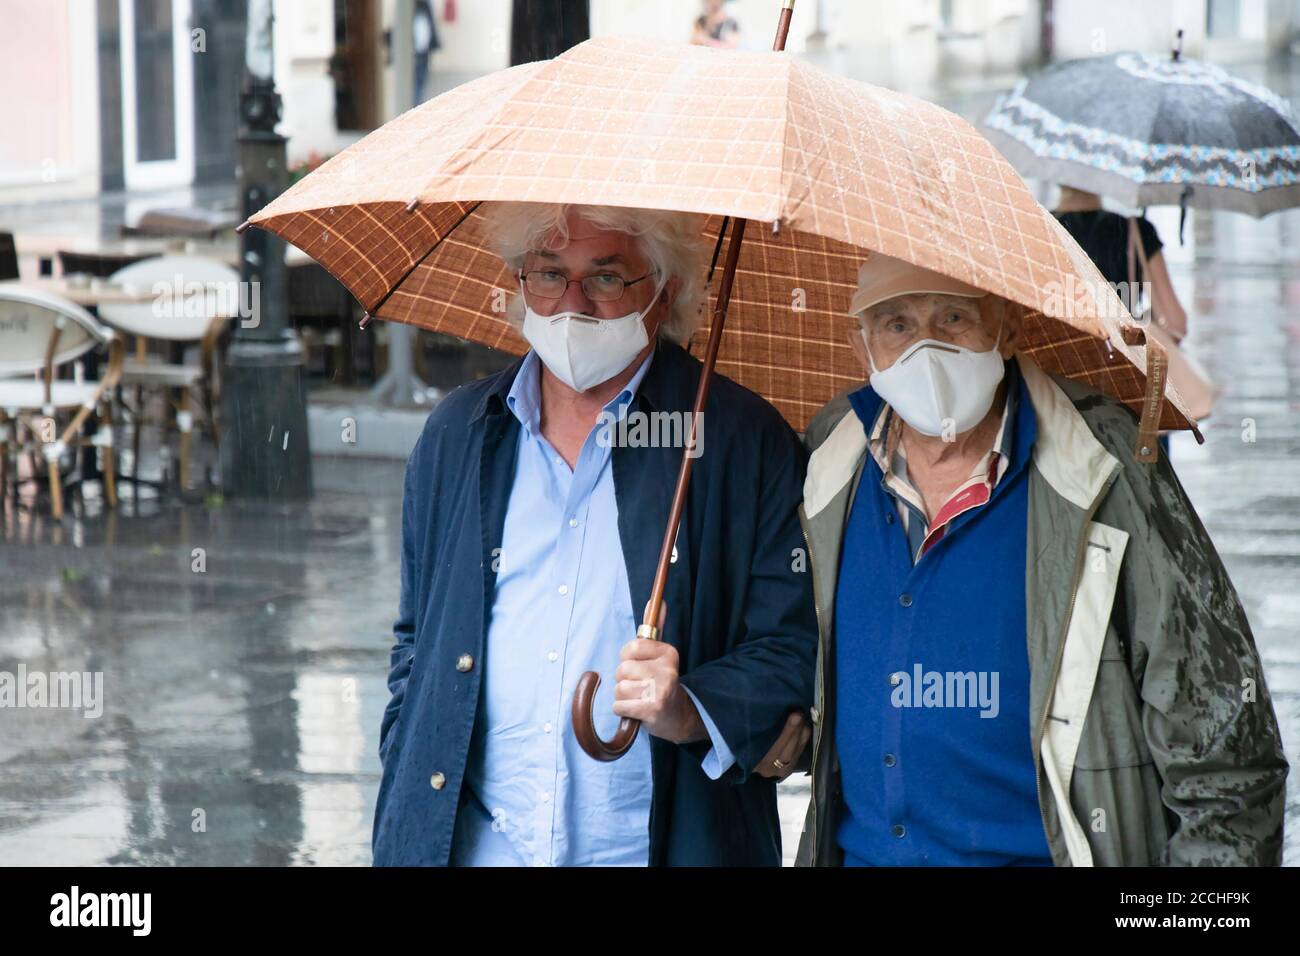 Belgrad, Serbien - 5. August 2020: Zwei Generationen ältere Männer, die eine Schutzmaske tragen, gehen an einem regnerischen Tag auf der Straße unter dem Regenschirm Stockfoto